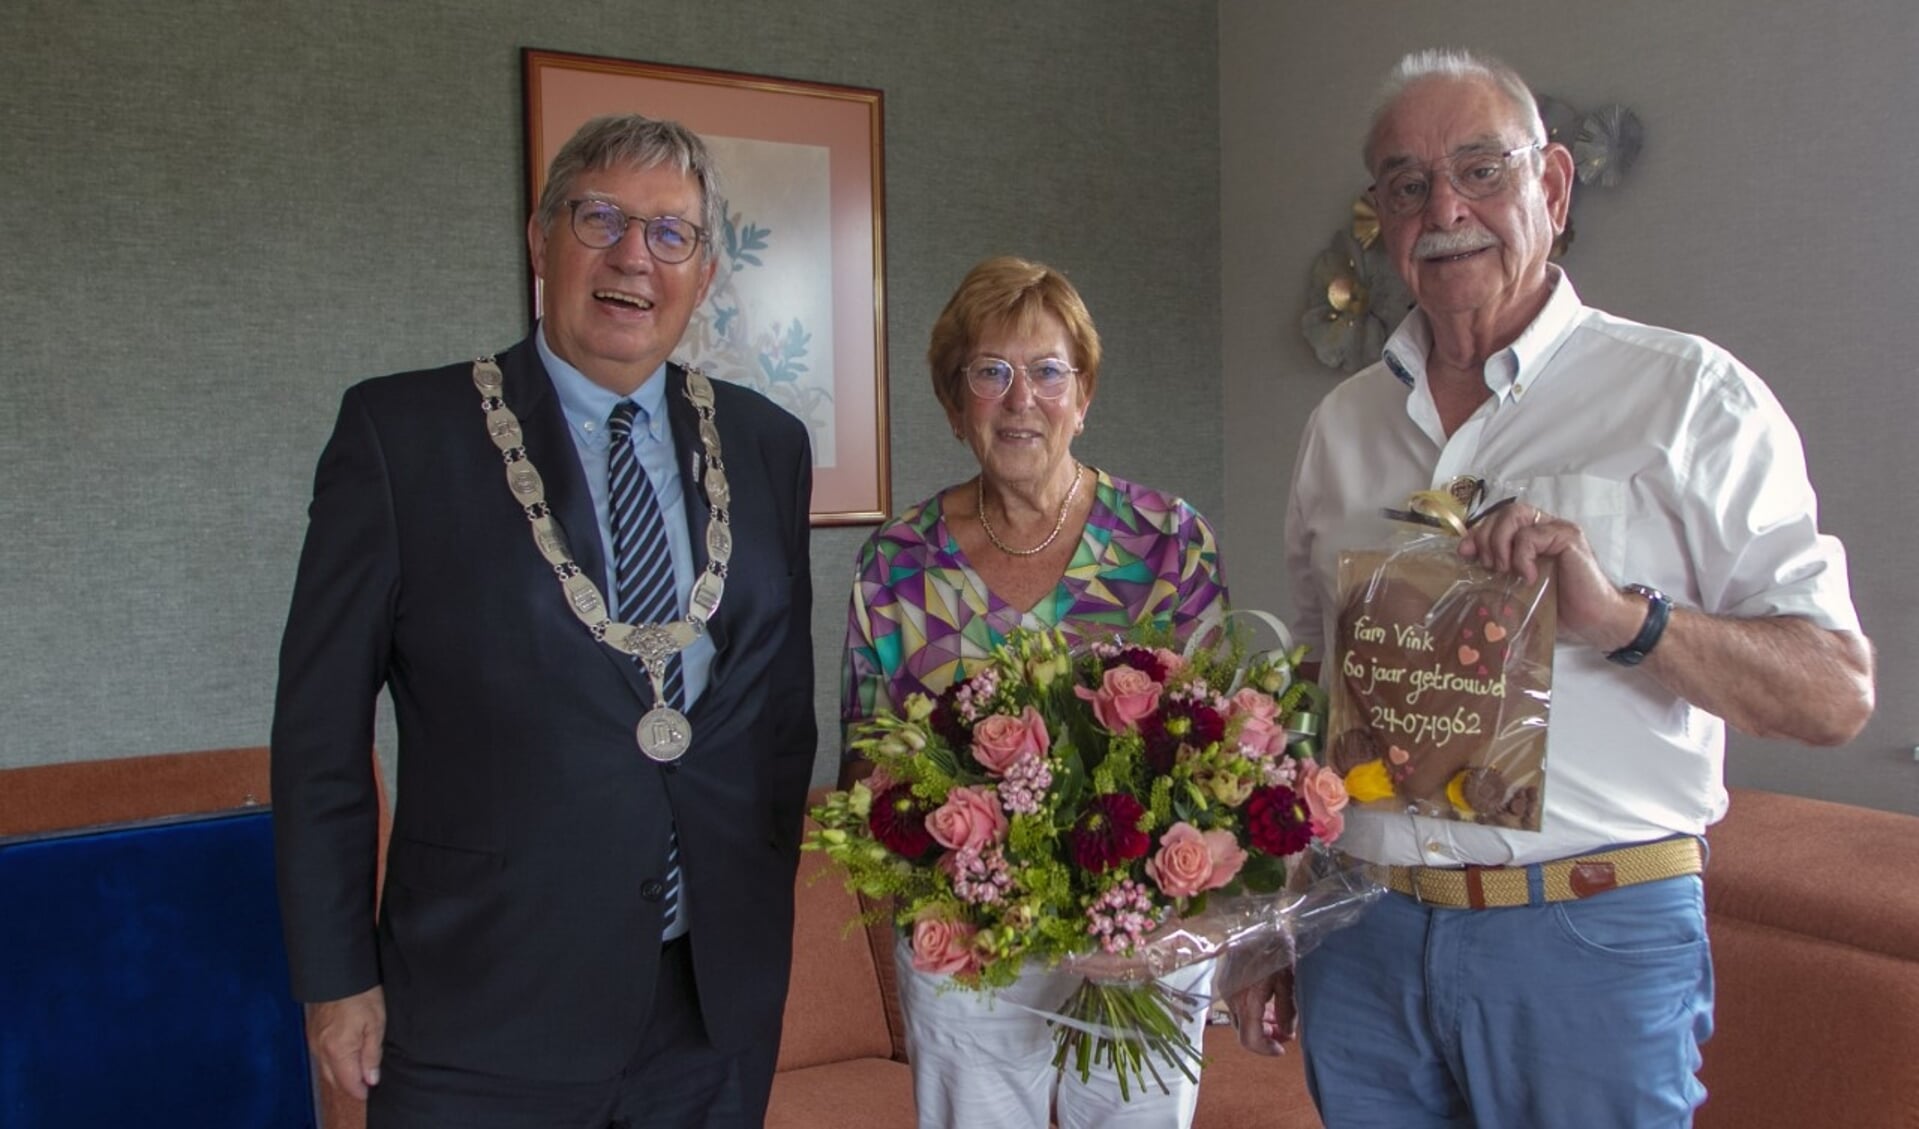 Burgemeester Rensen ging maandag op bezoek bij het 60-jarig bruidspaar Vink om hen te feliciteren (Foto: Wil van Balen)